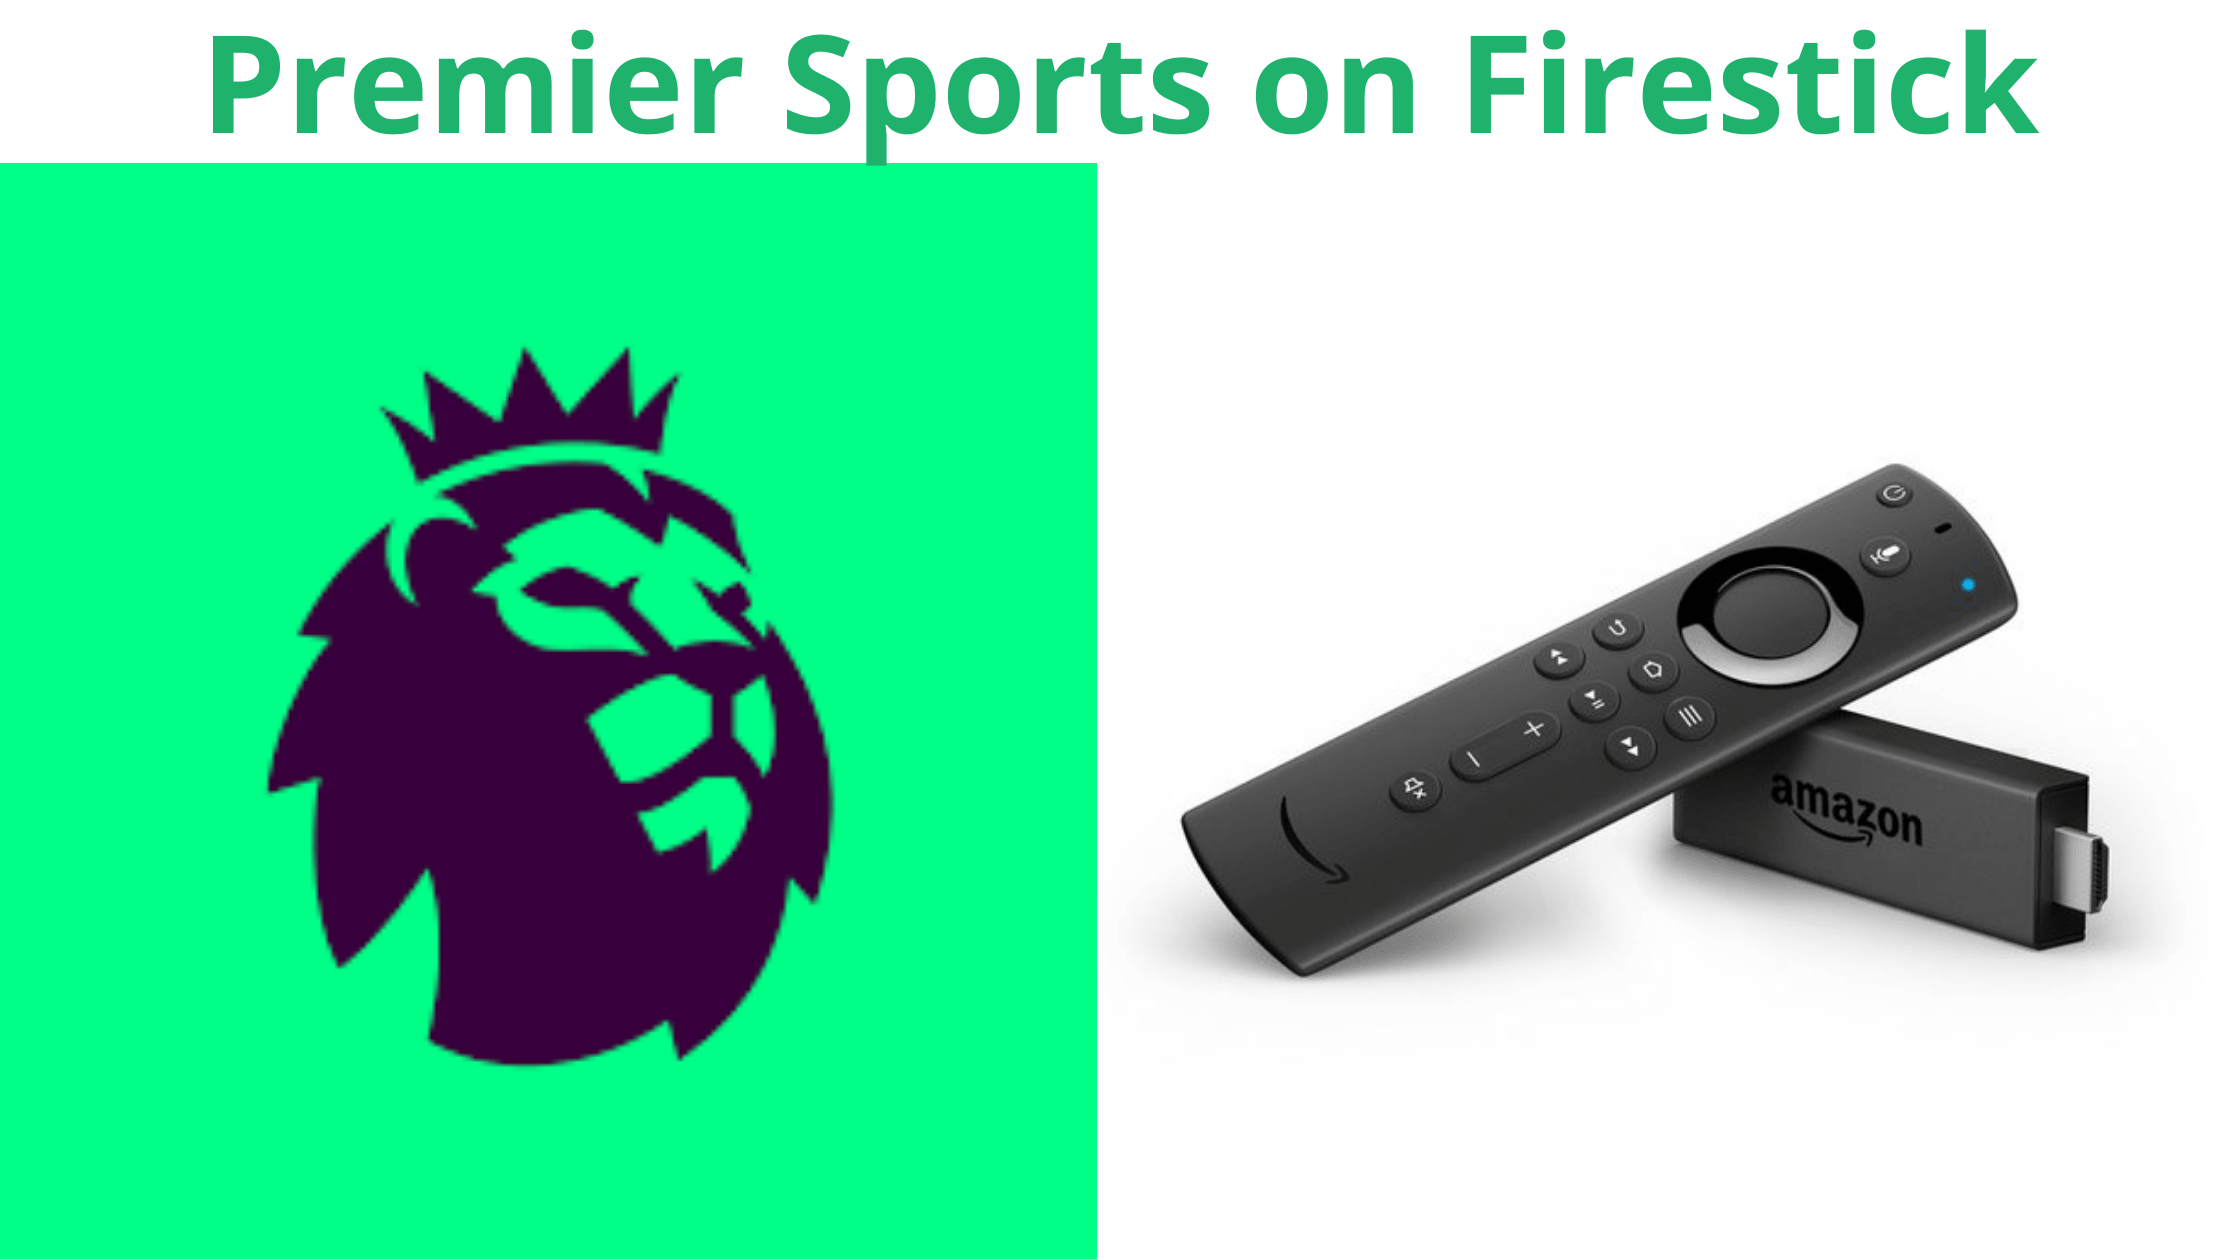 Premier Sports on Firestick